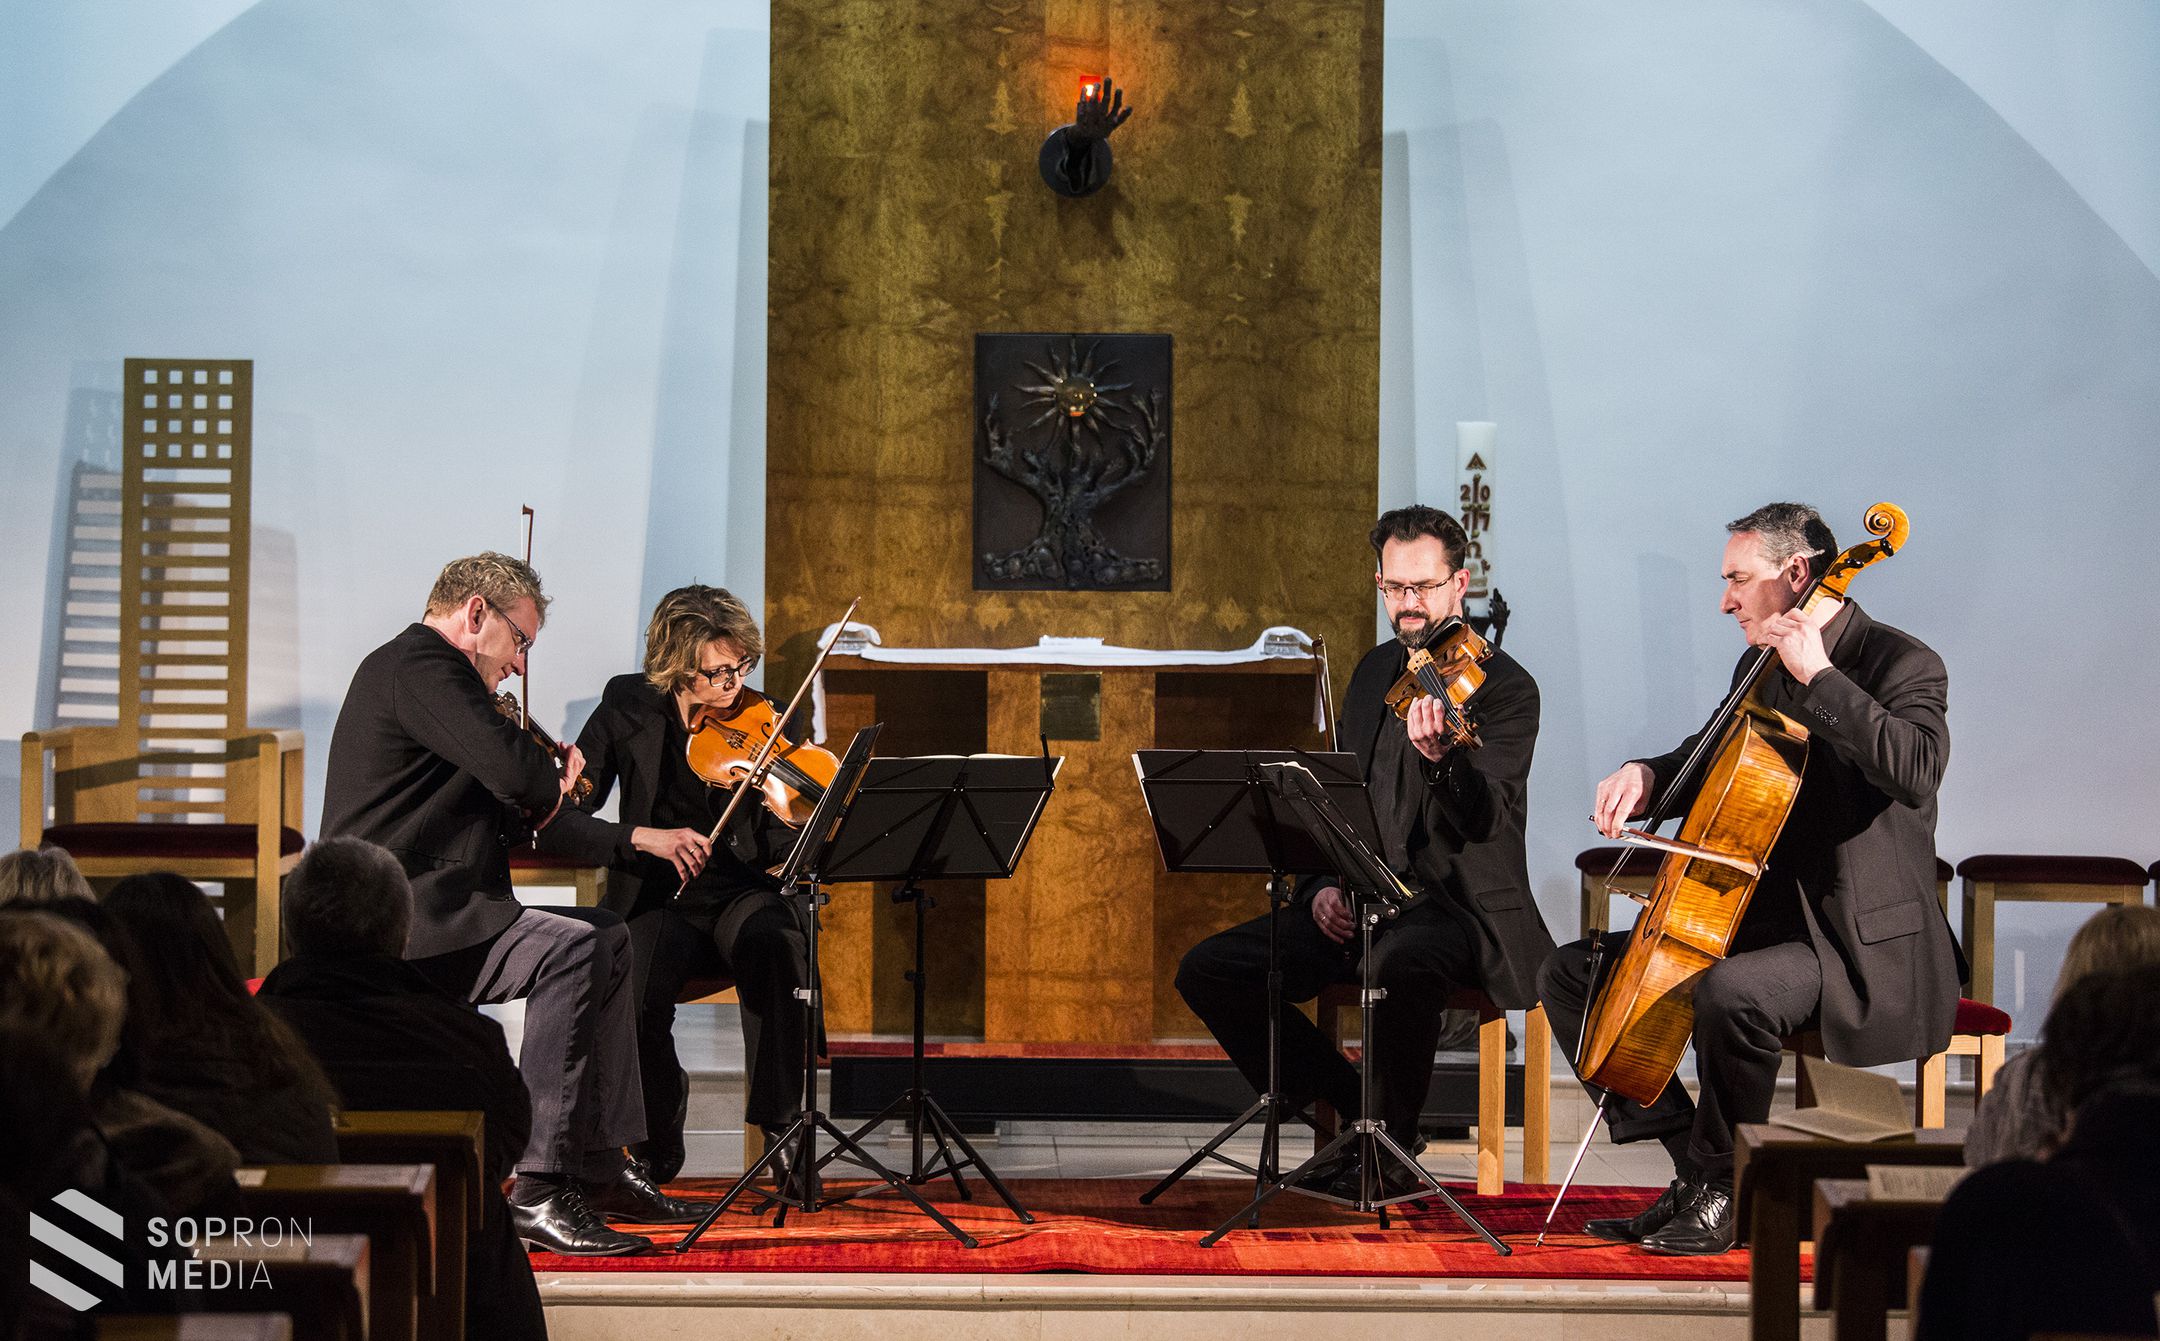 Kultikus művel éltetik az évszázados hagyományt a soproni zenészek 